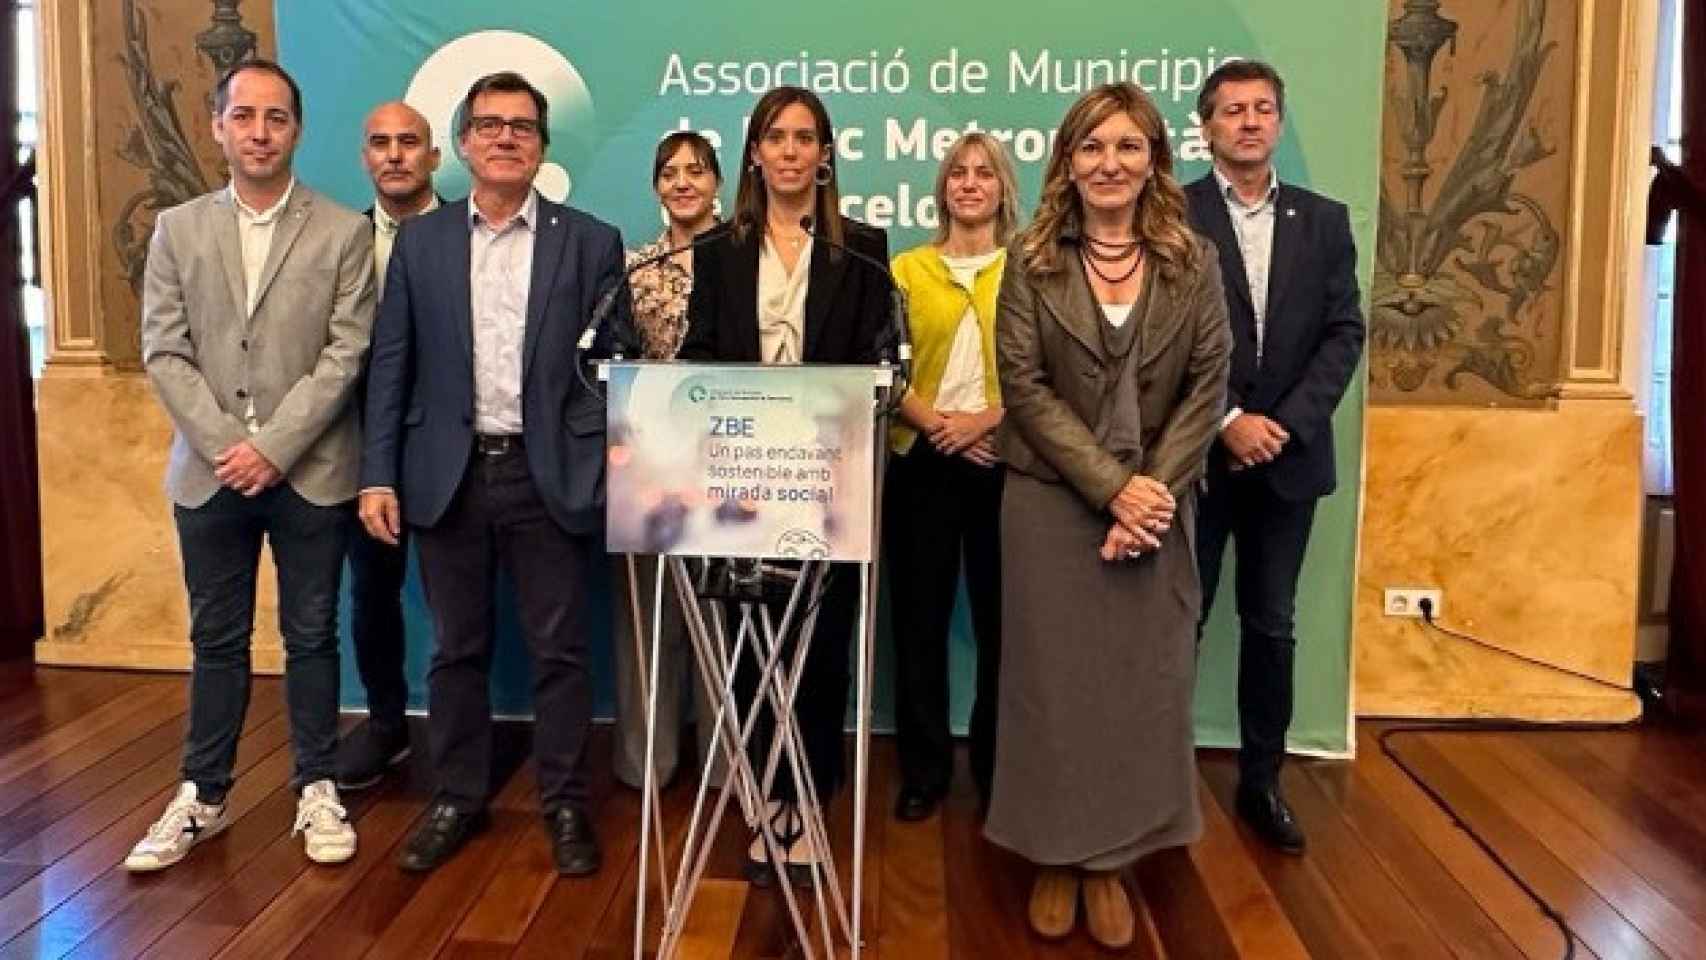 Los alcaldesa de las ciudades de la Asociación de Municipios del Arco Metropolitano de Barcelona